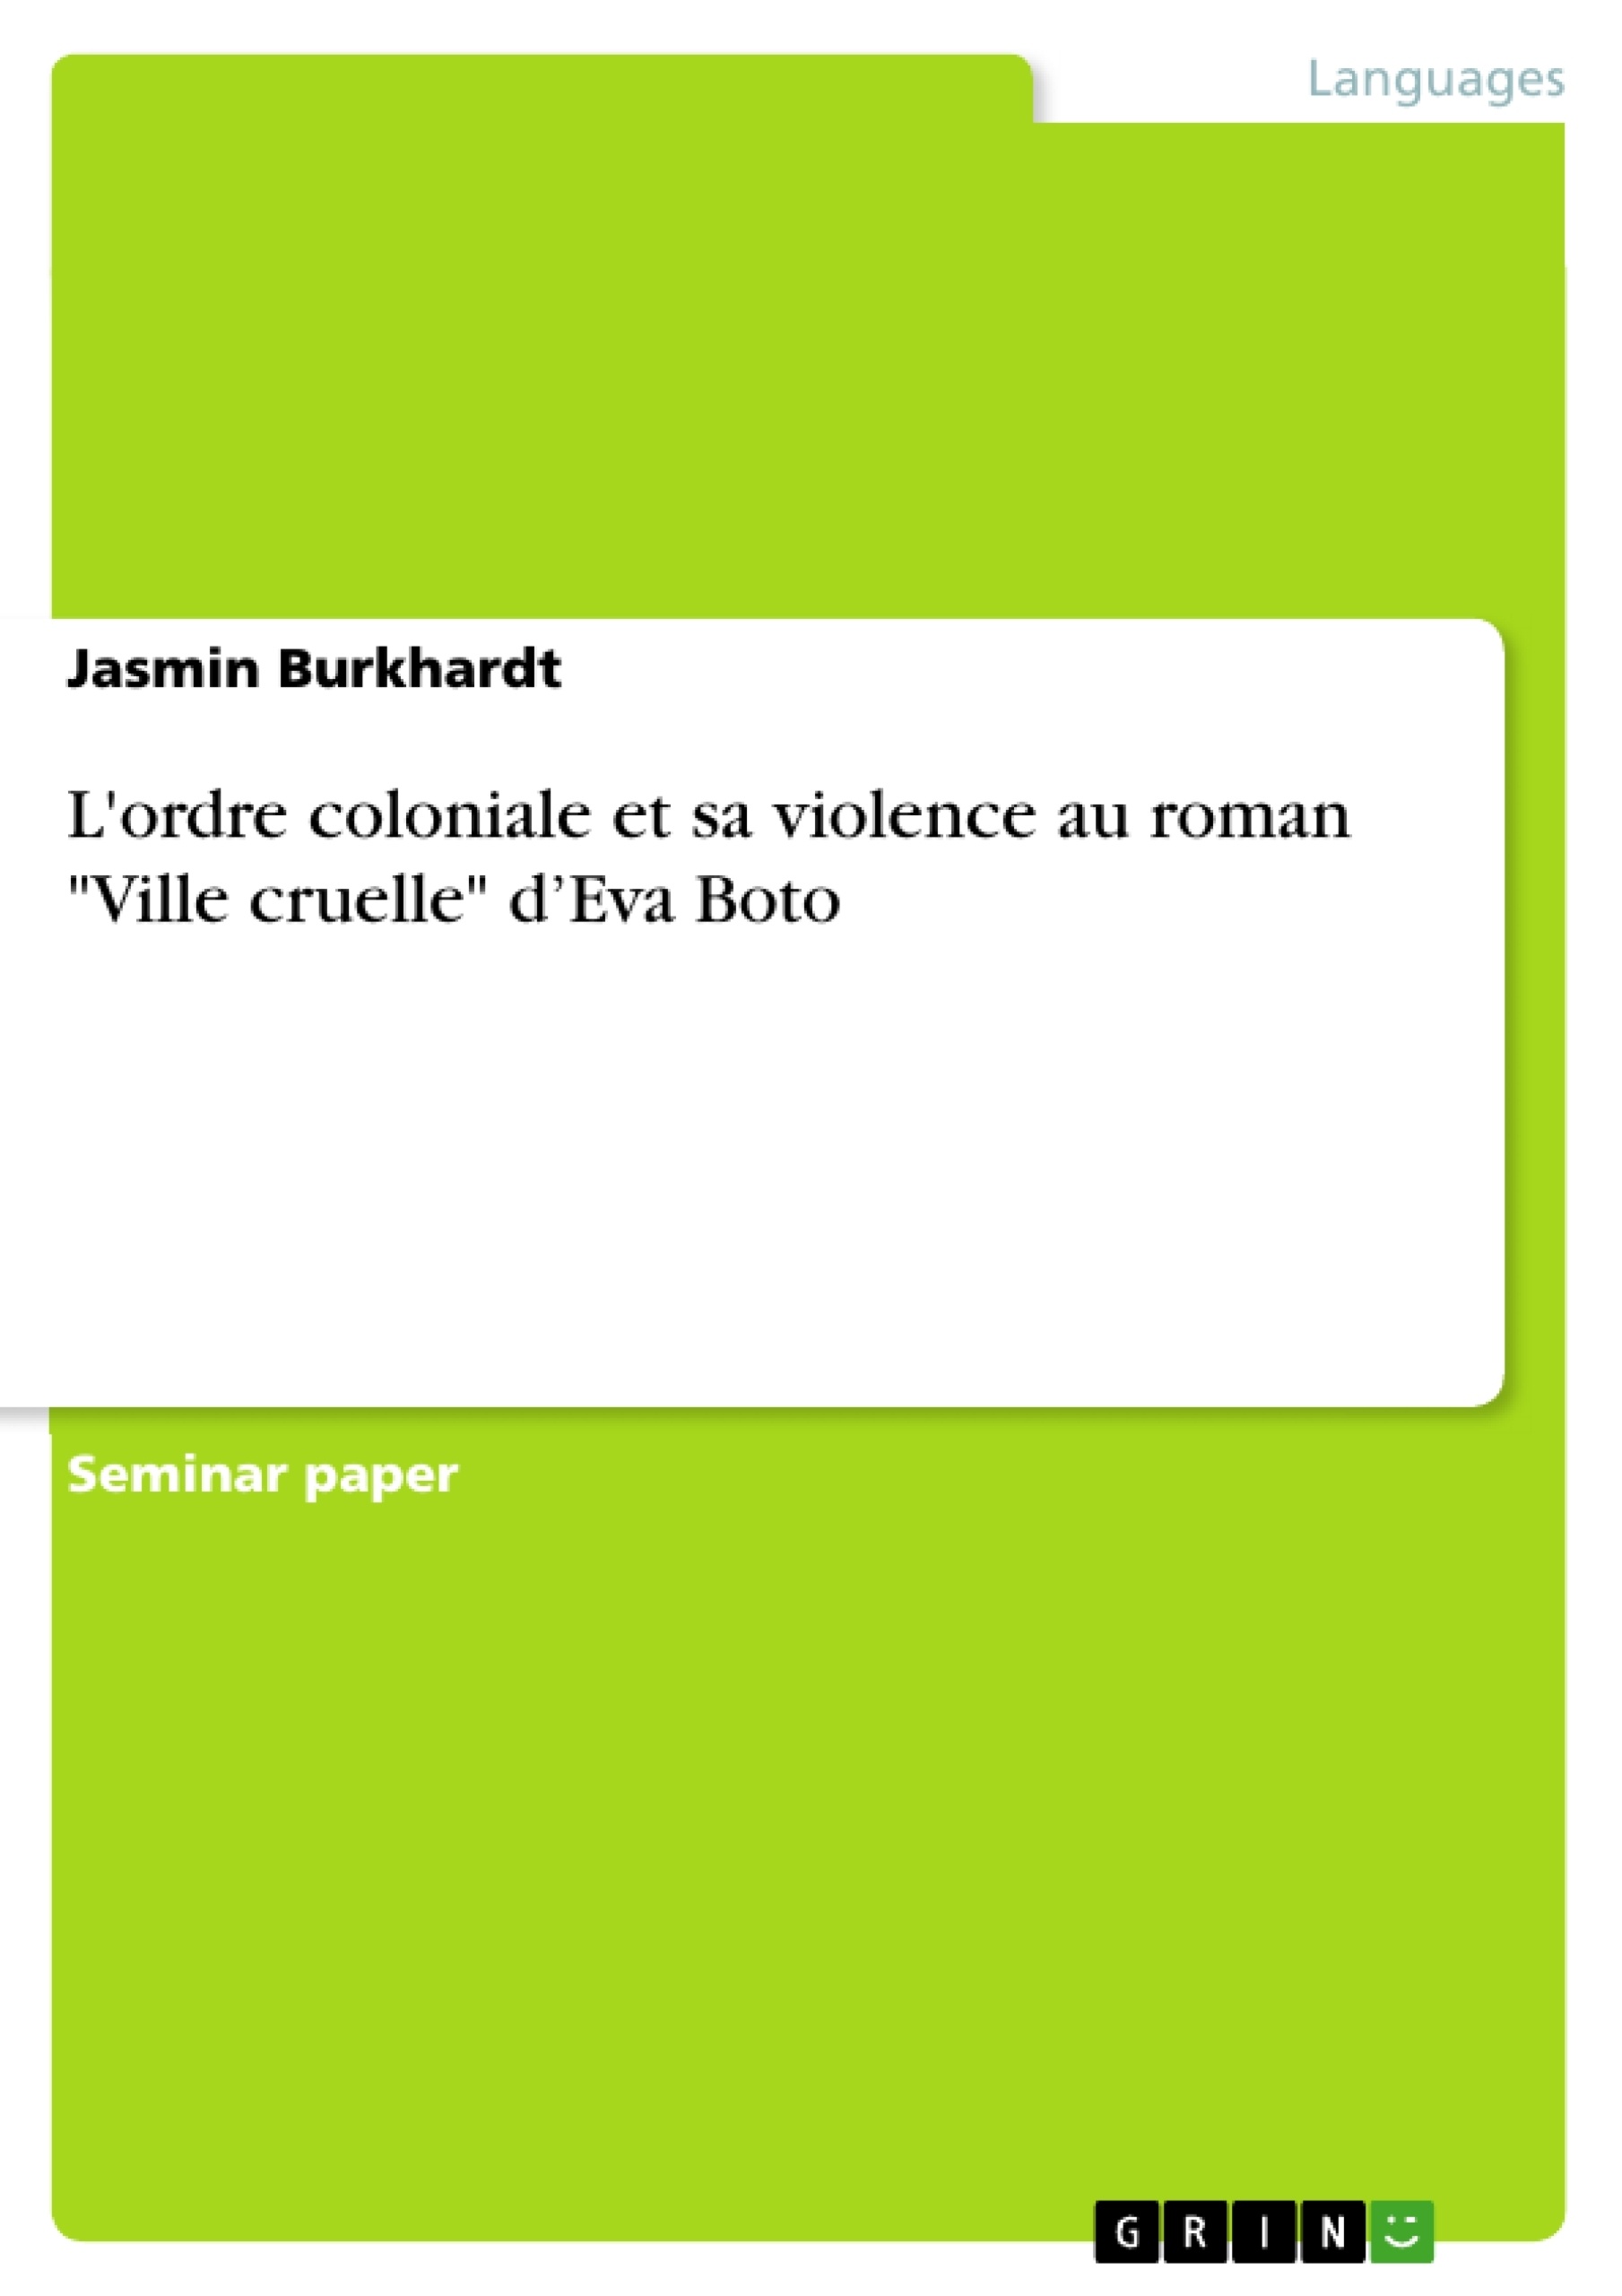 Titel: L'ordre coloniale et sa violence au roman "Ville cruelle" d’Eva Boto